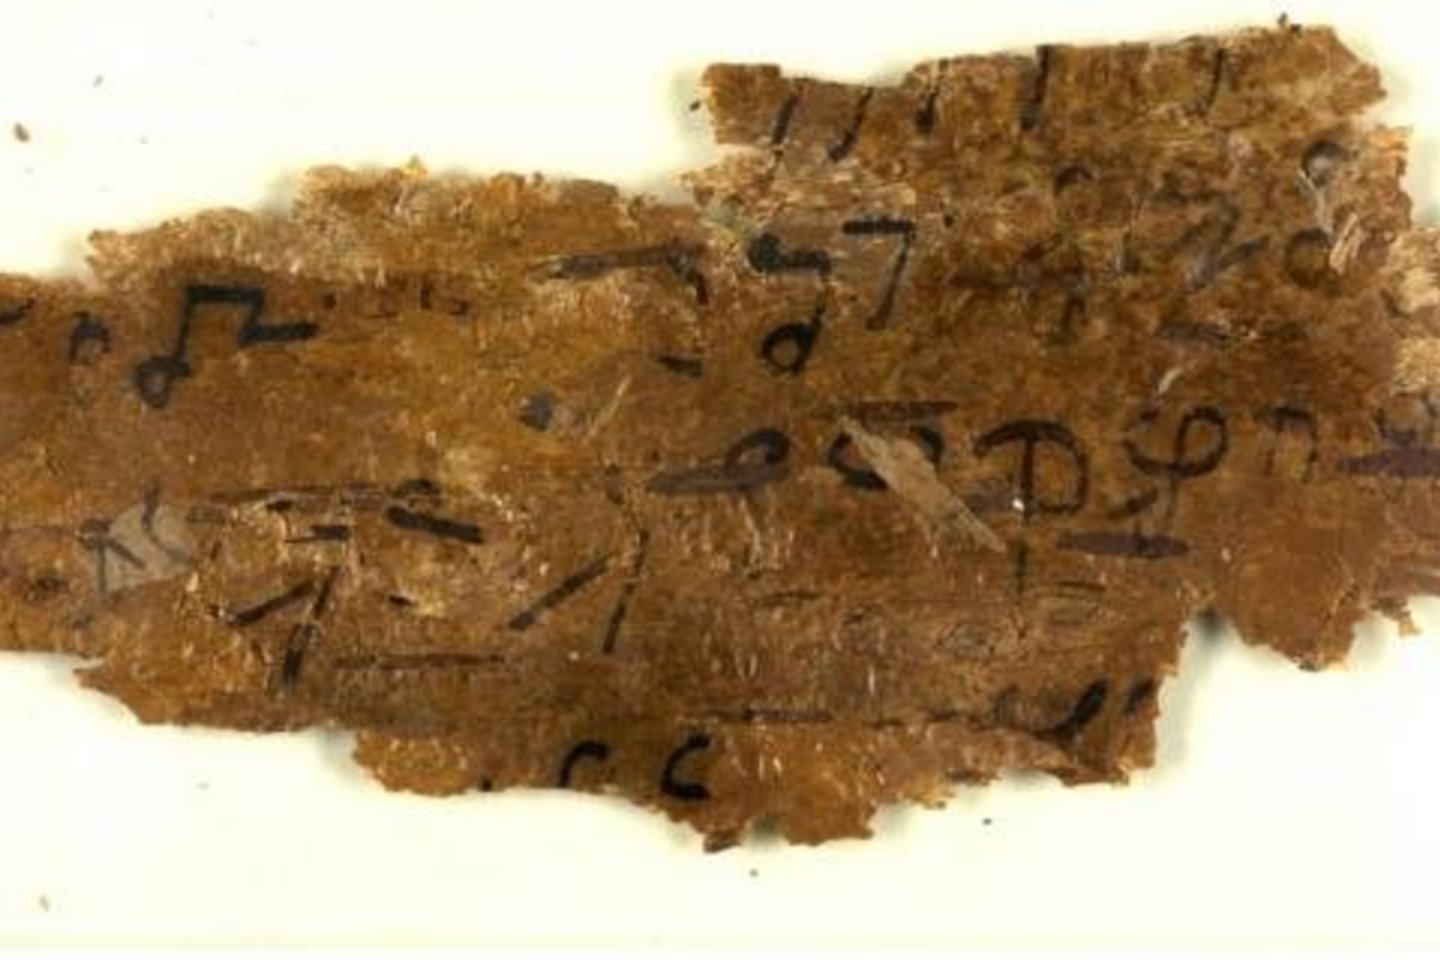  Seniausi kada nors rasti budistų raštai surašyti ant beržo žievės.<br> British Library nuotr.